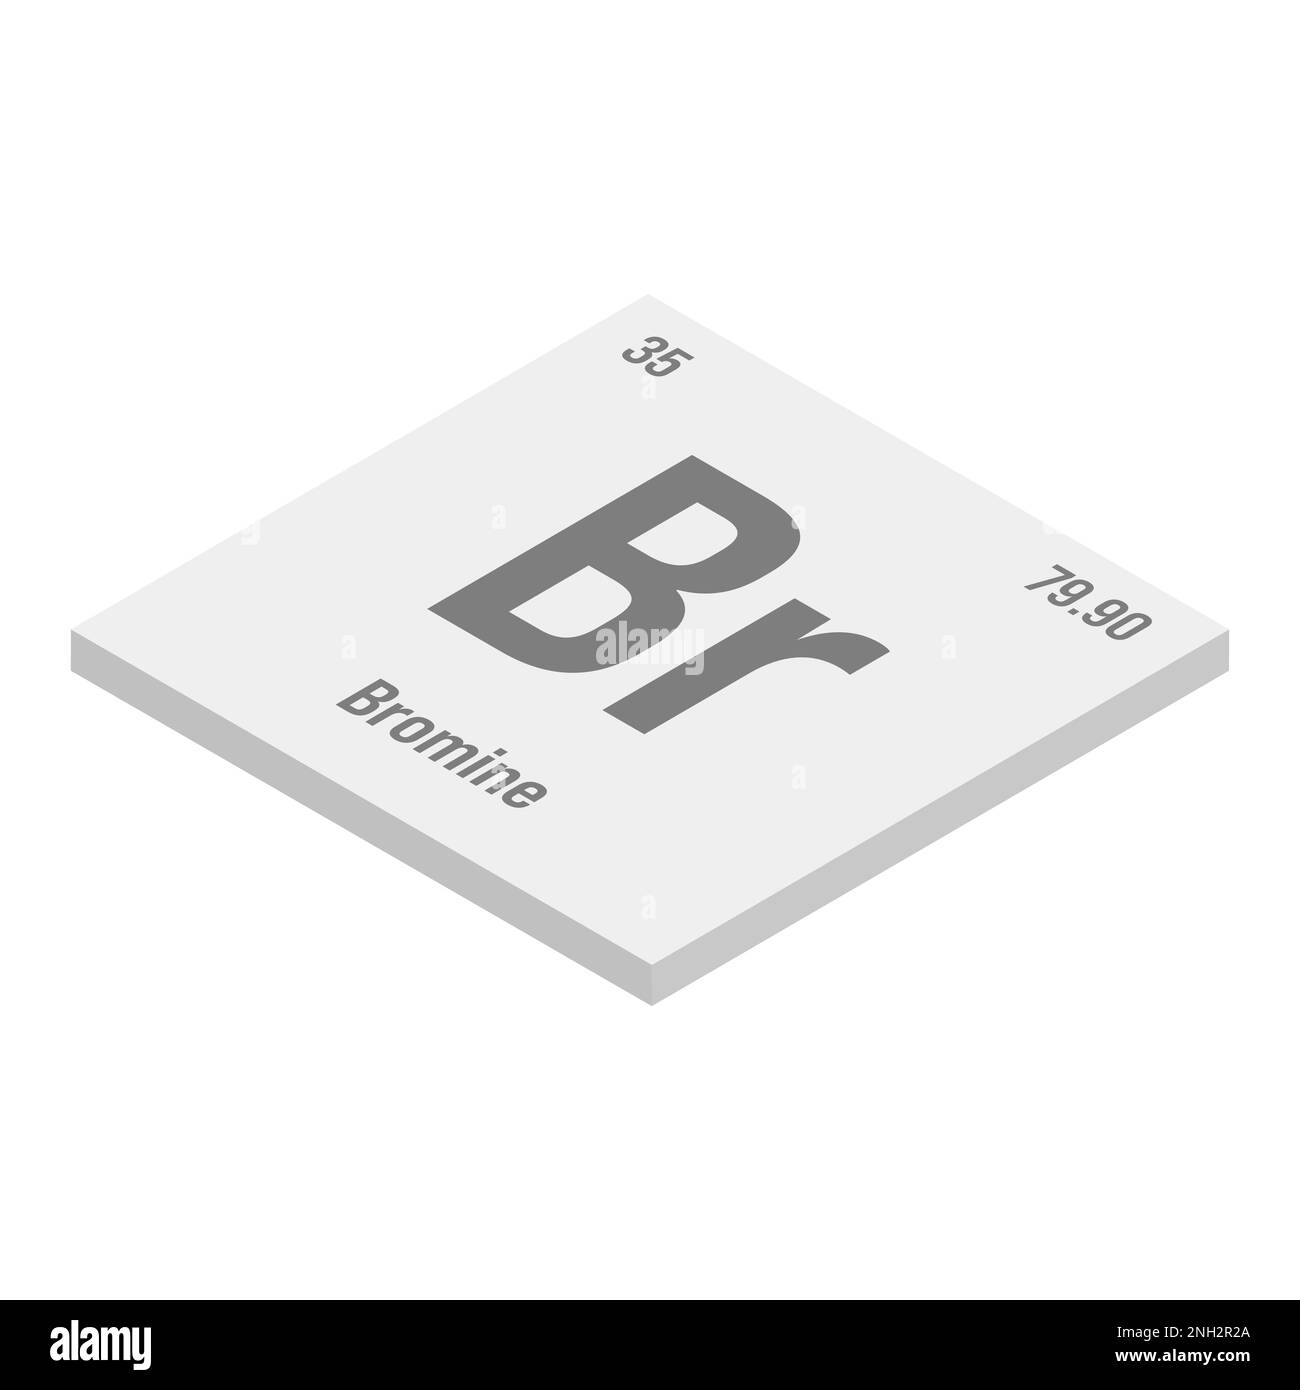 Bromo, Br, grigio 3D immagine isometrica dell'elemento periodico della tabella con nome, simbolo, numero atomico e peso. Alogeno con vari usi industriali, come ritardanti di fiamma, purificazione dell'acqua, e come fumigante in agricoltura. Illustrazione Vettoriale